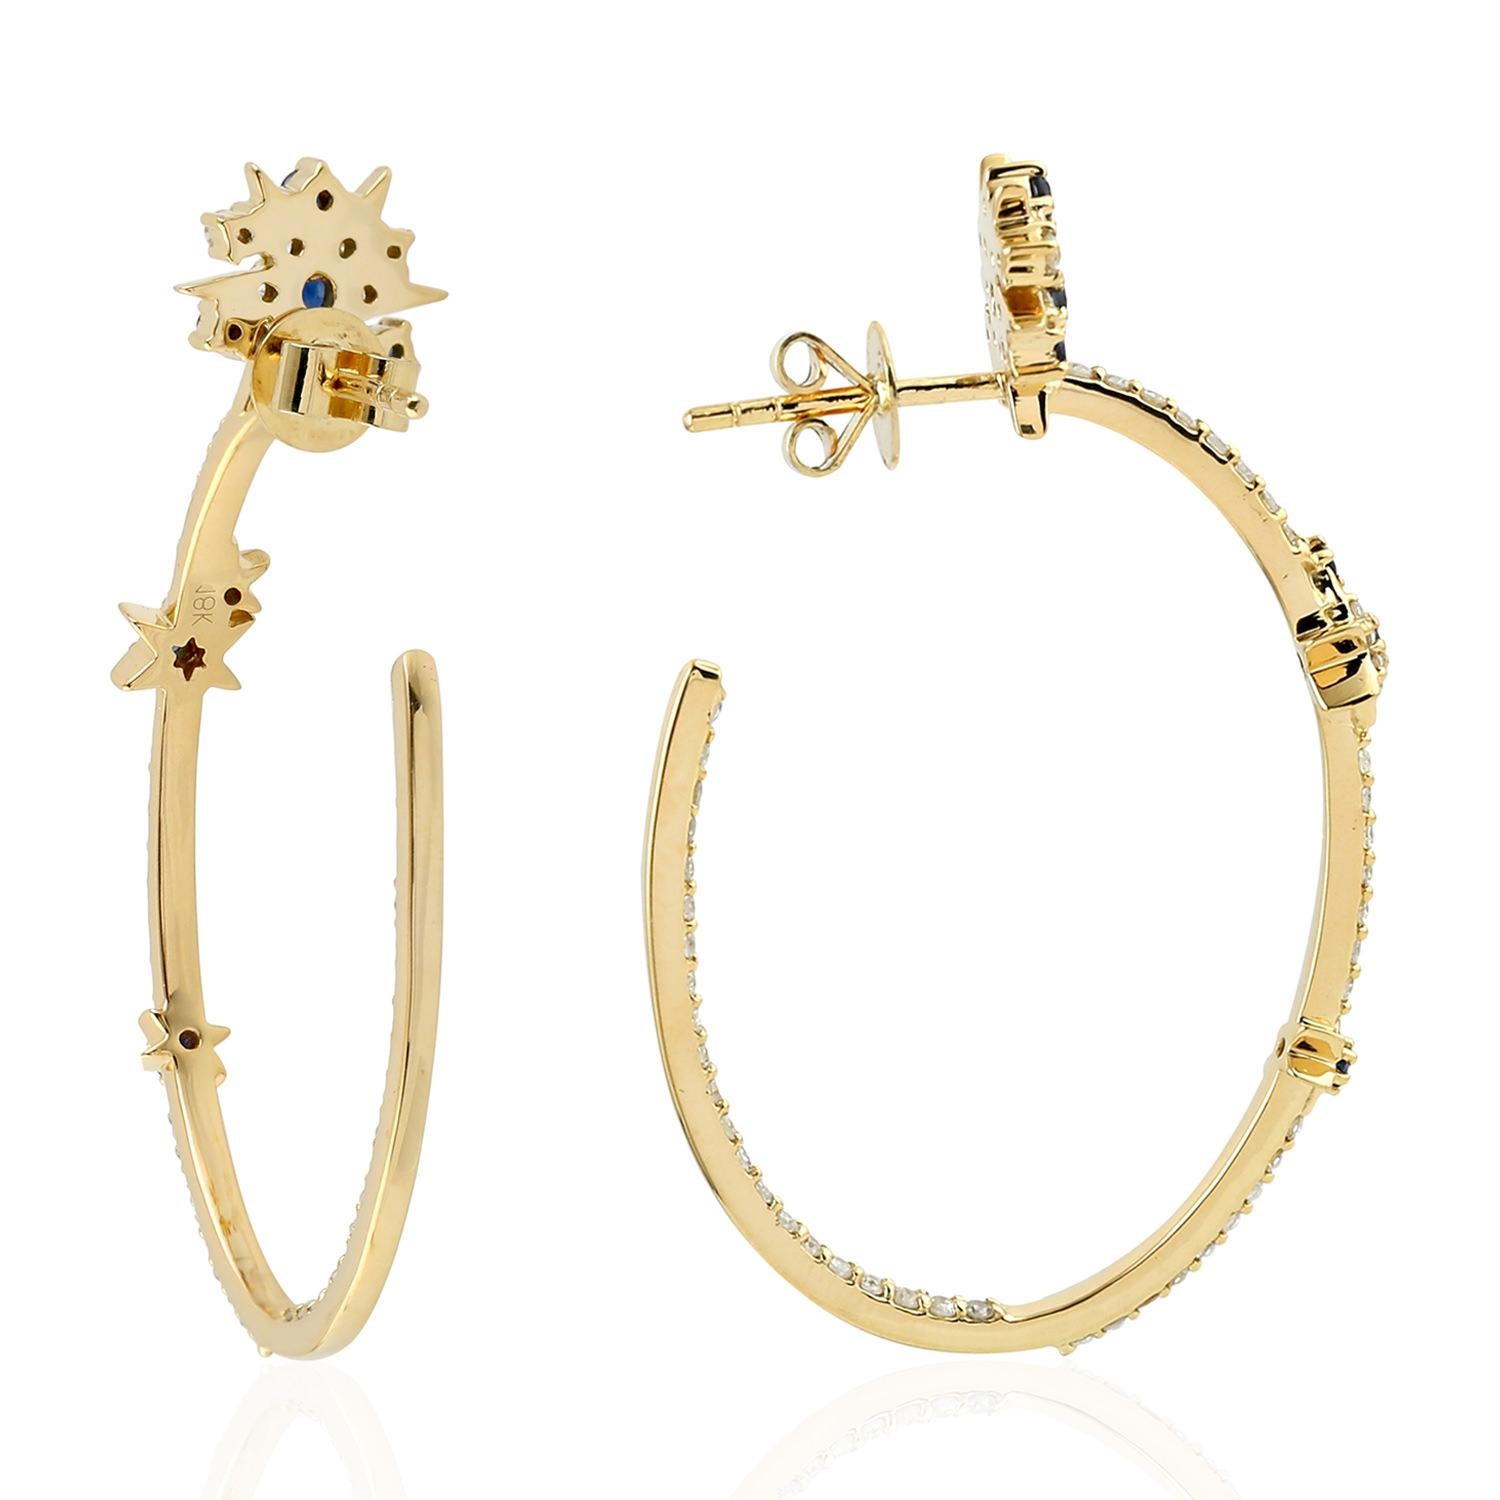 Diese handgefertigten Ohrringe aus 18-karätigem Gold sind mit einem blauen Saphir von 0,47 Karat und funkelnden Diamanten von 0,95 Karat besetzt.

FOLLOW  MEGHNA JEWELS Storefront, um die neueste Collection'S und exklusive Stücke zu sehen.  Meghna